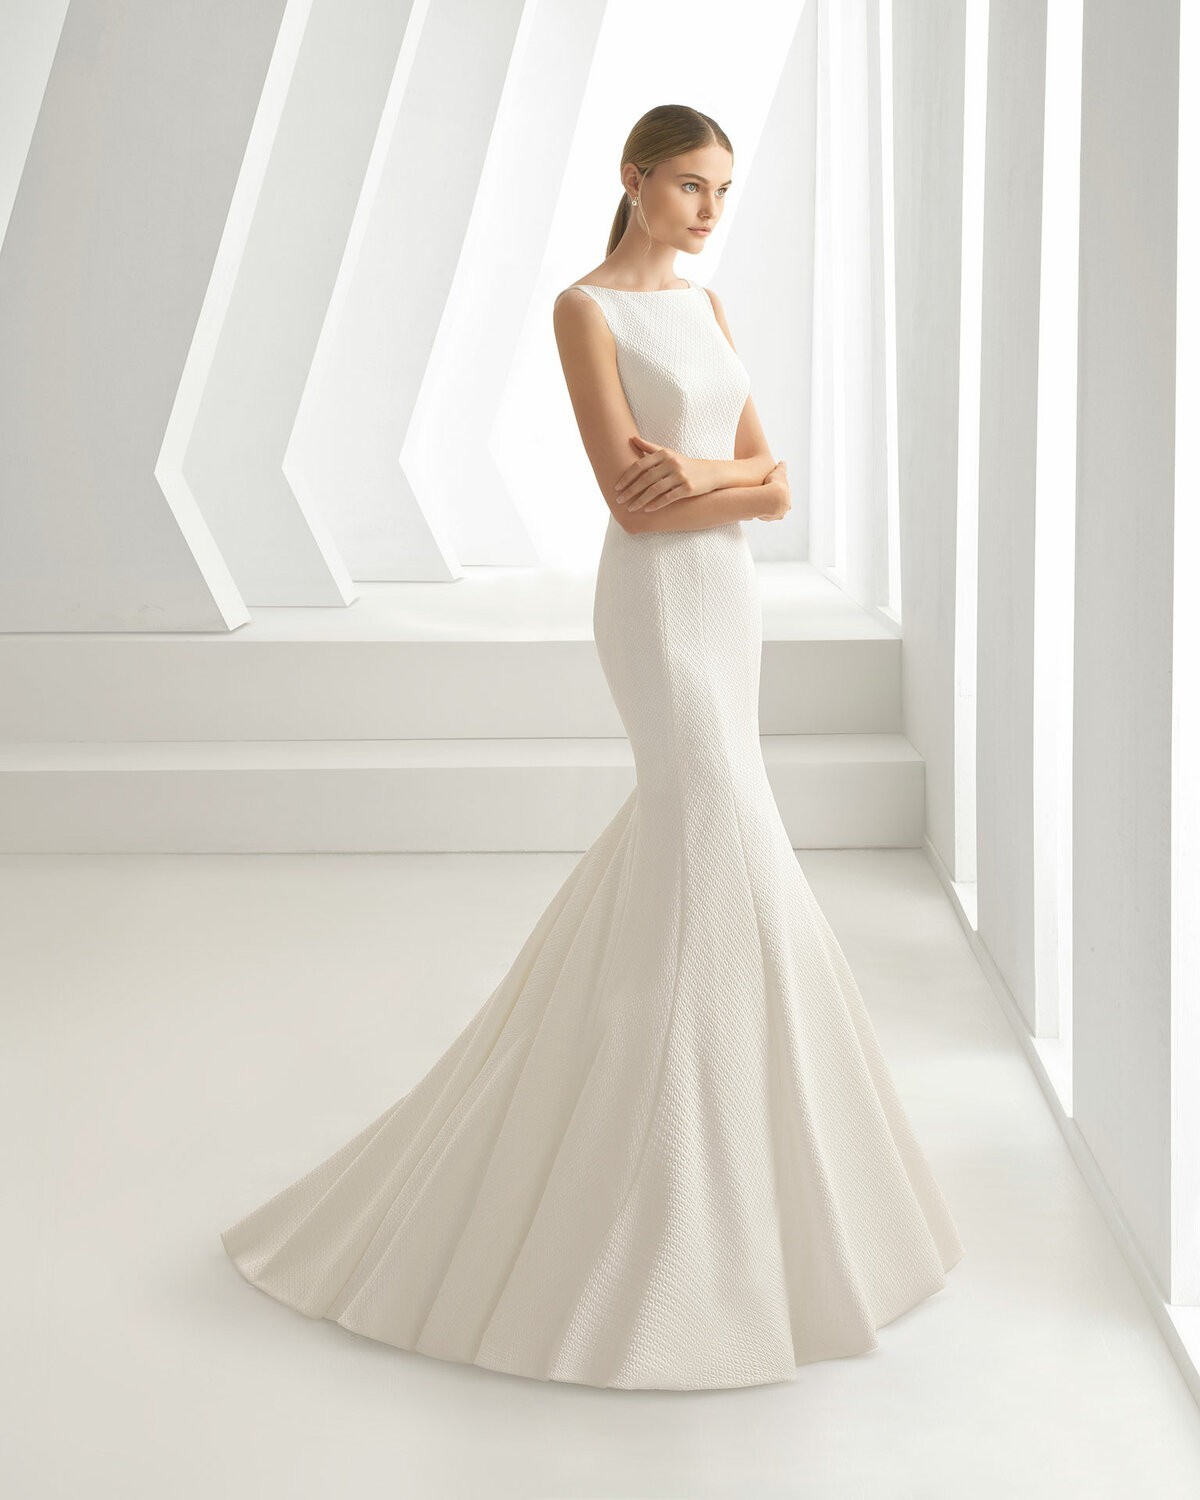 ASTRAL - abito da sposa collezione 2020 - Rosa Clarà